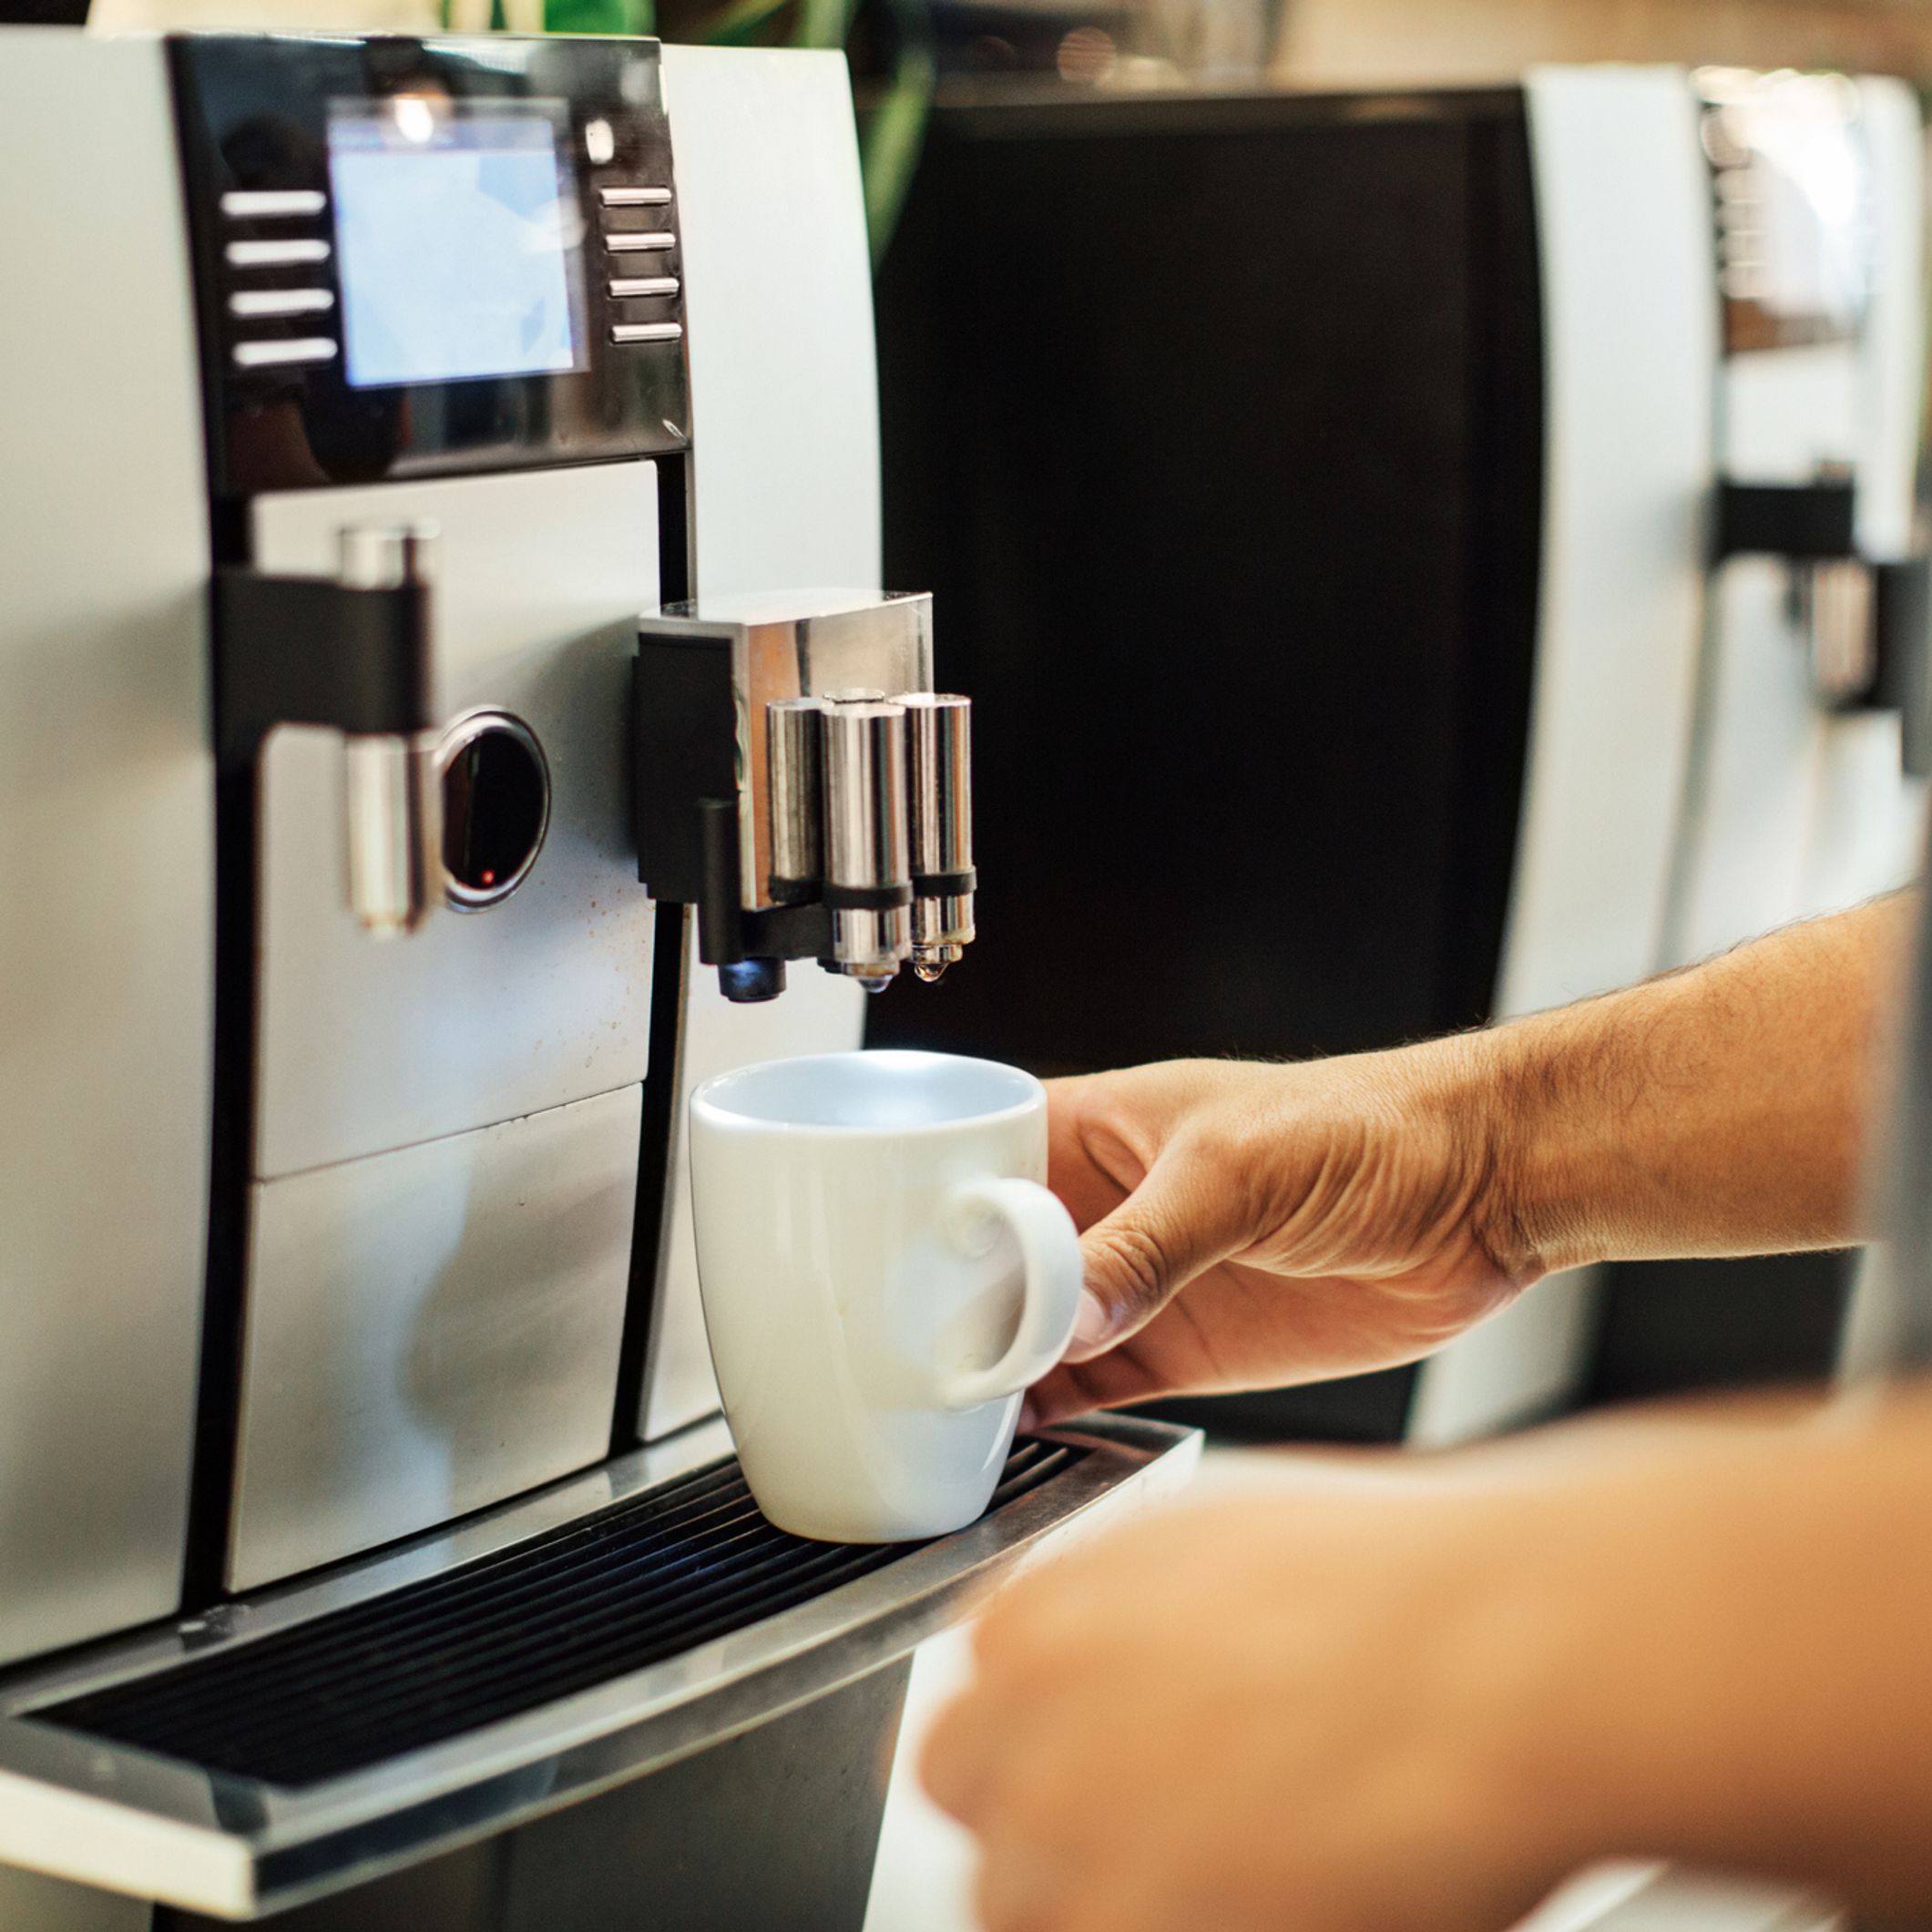 Black Friday : grosse baisse de prix pour cette machine à café grain Krups,  profitez-en ! 